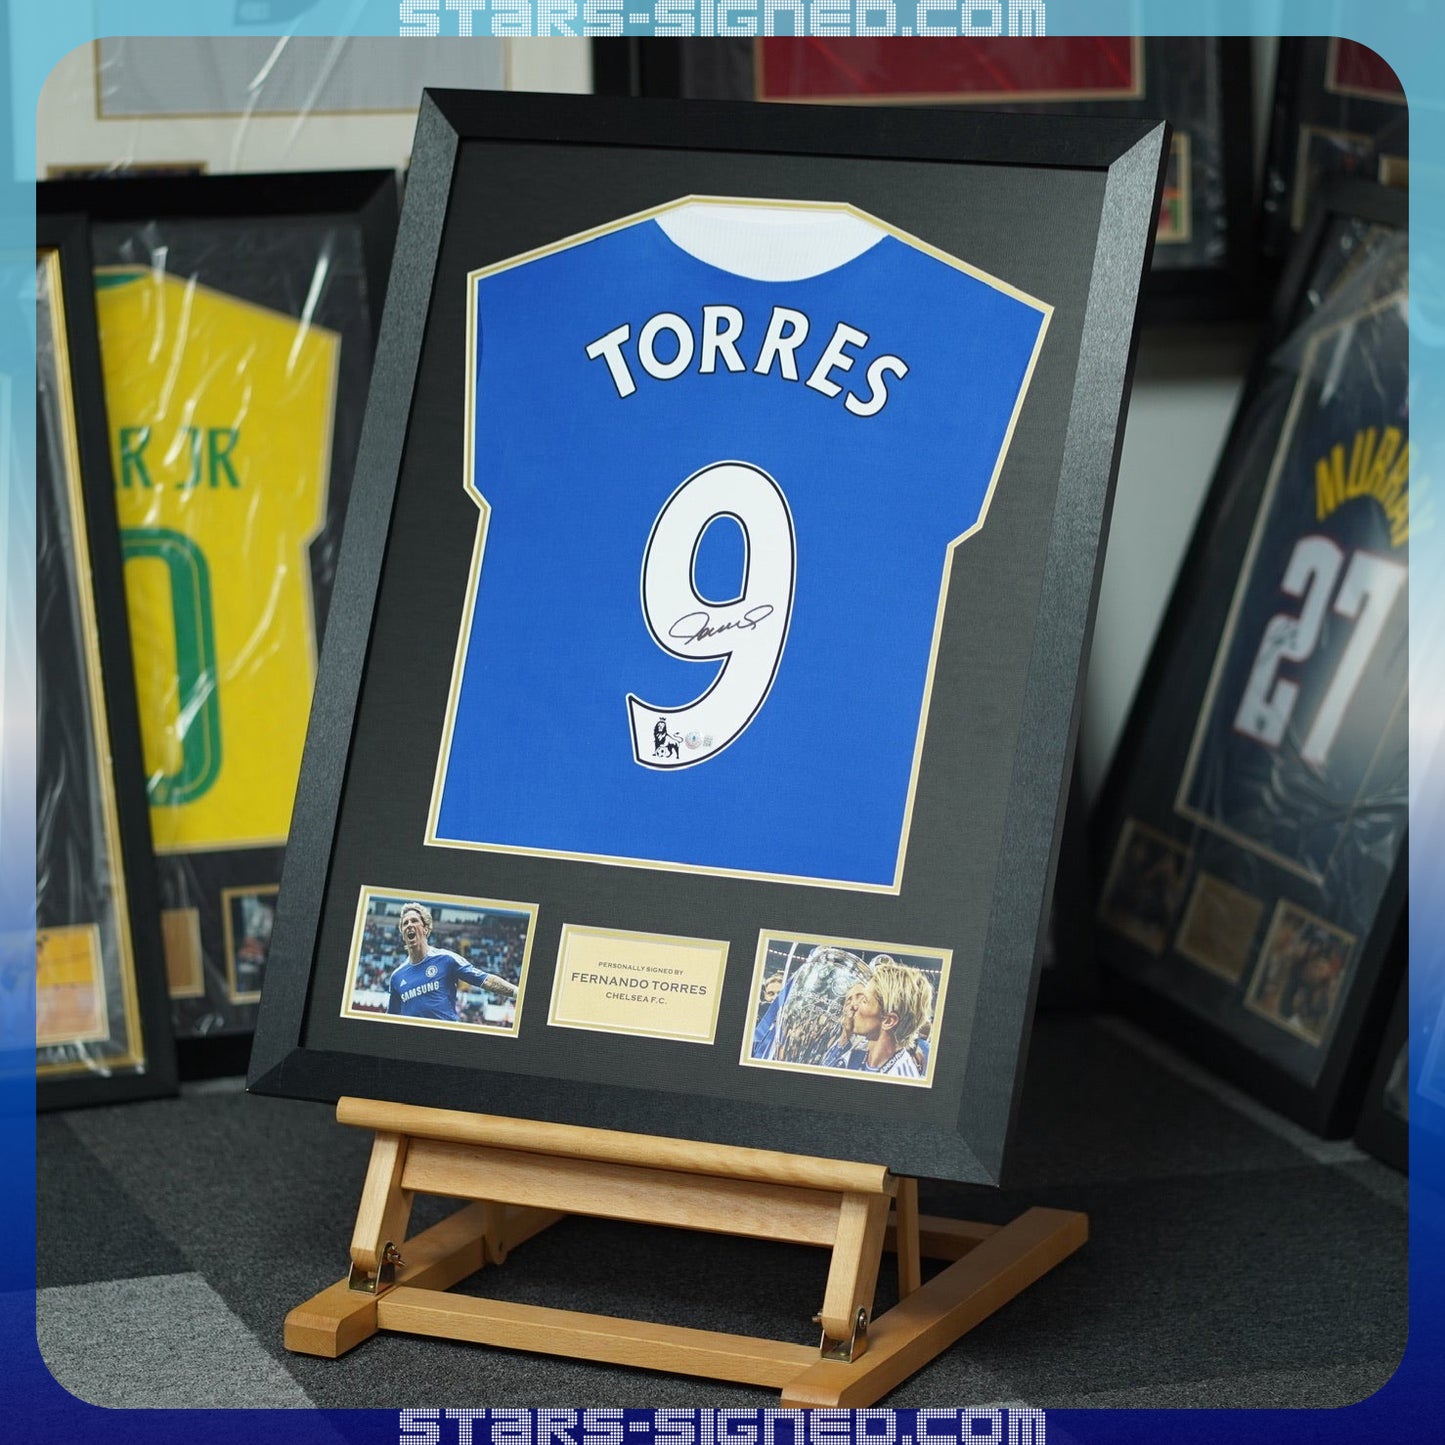 費蘭度·托利斯 Fernando Torres 車路士主場球衣裱框(背簽)